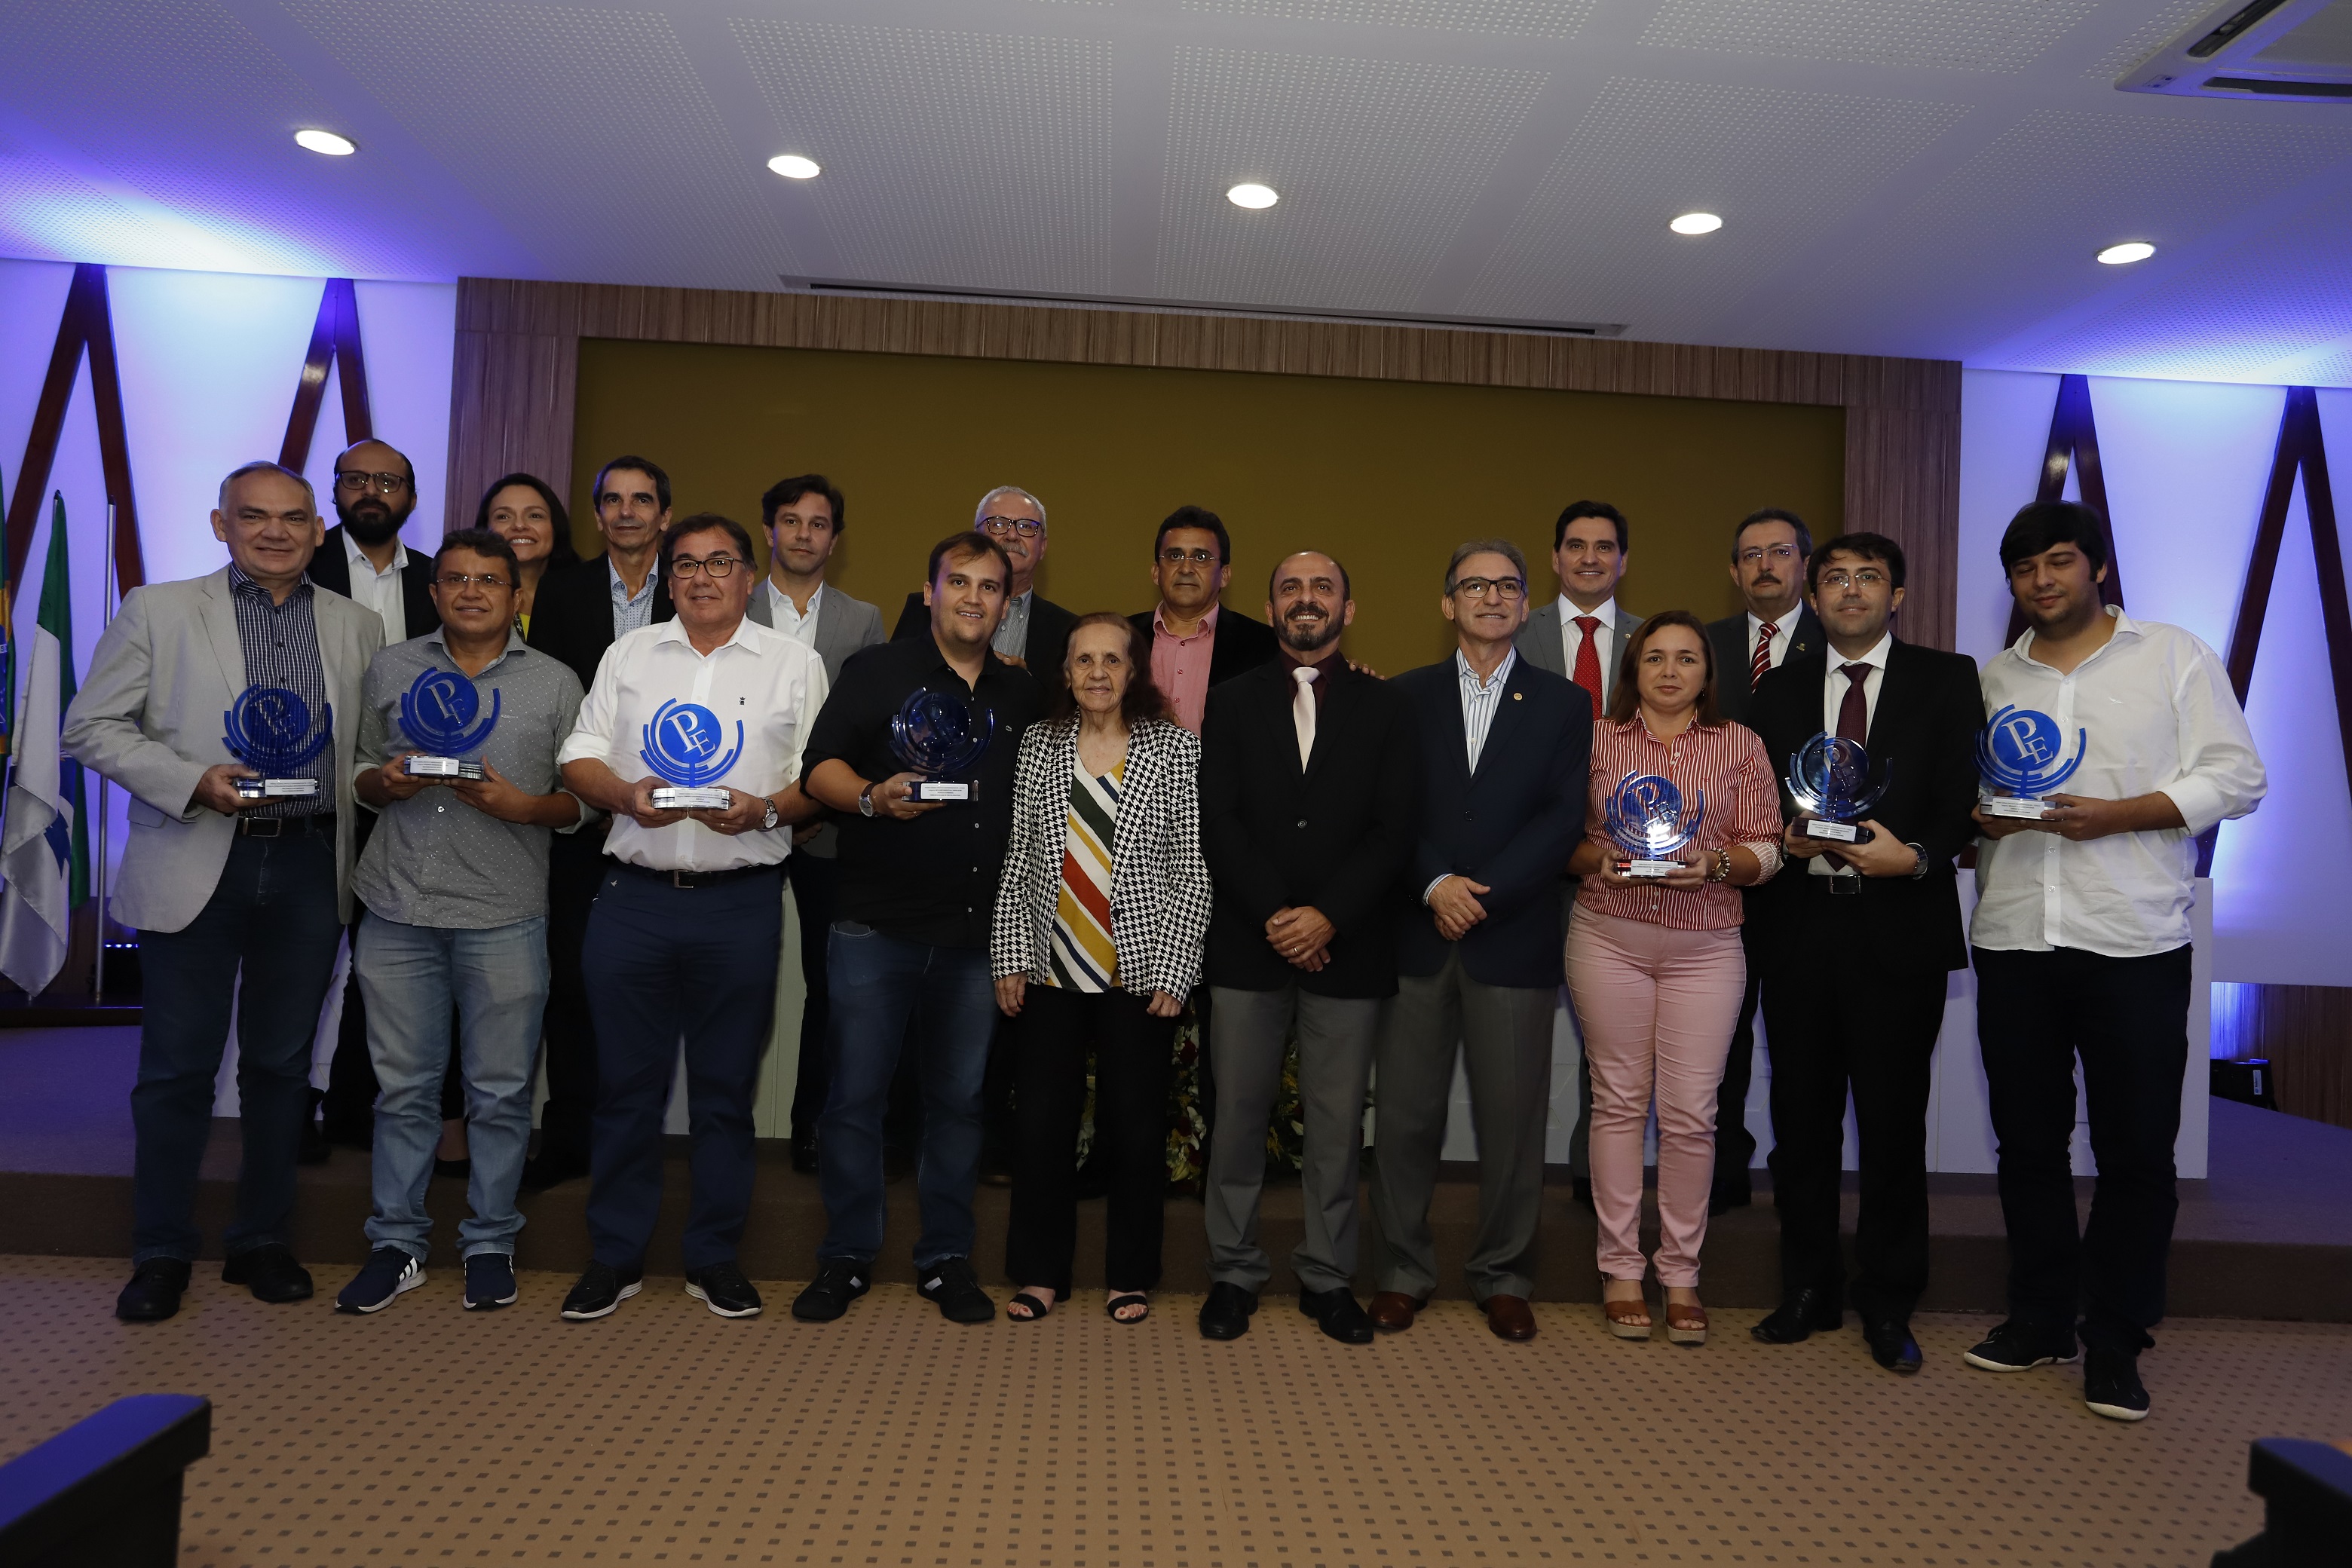 Sete municípios levam o Prêmio Prefeito Empreendedor no RN